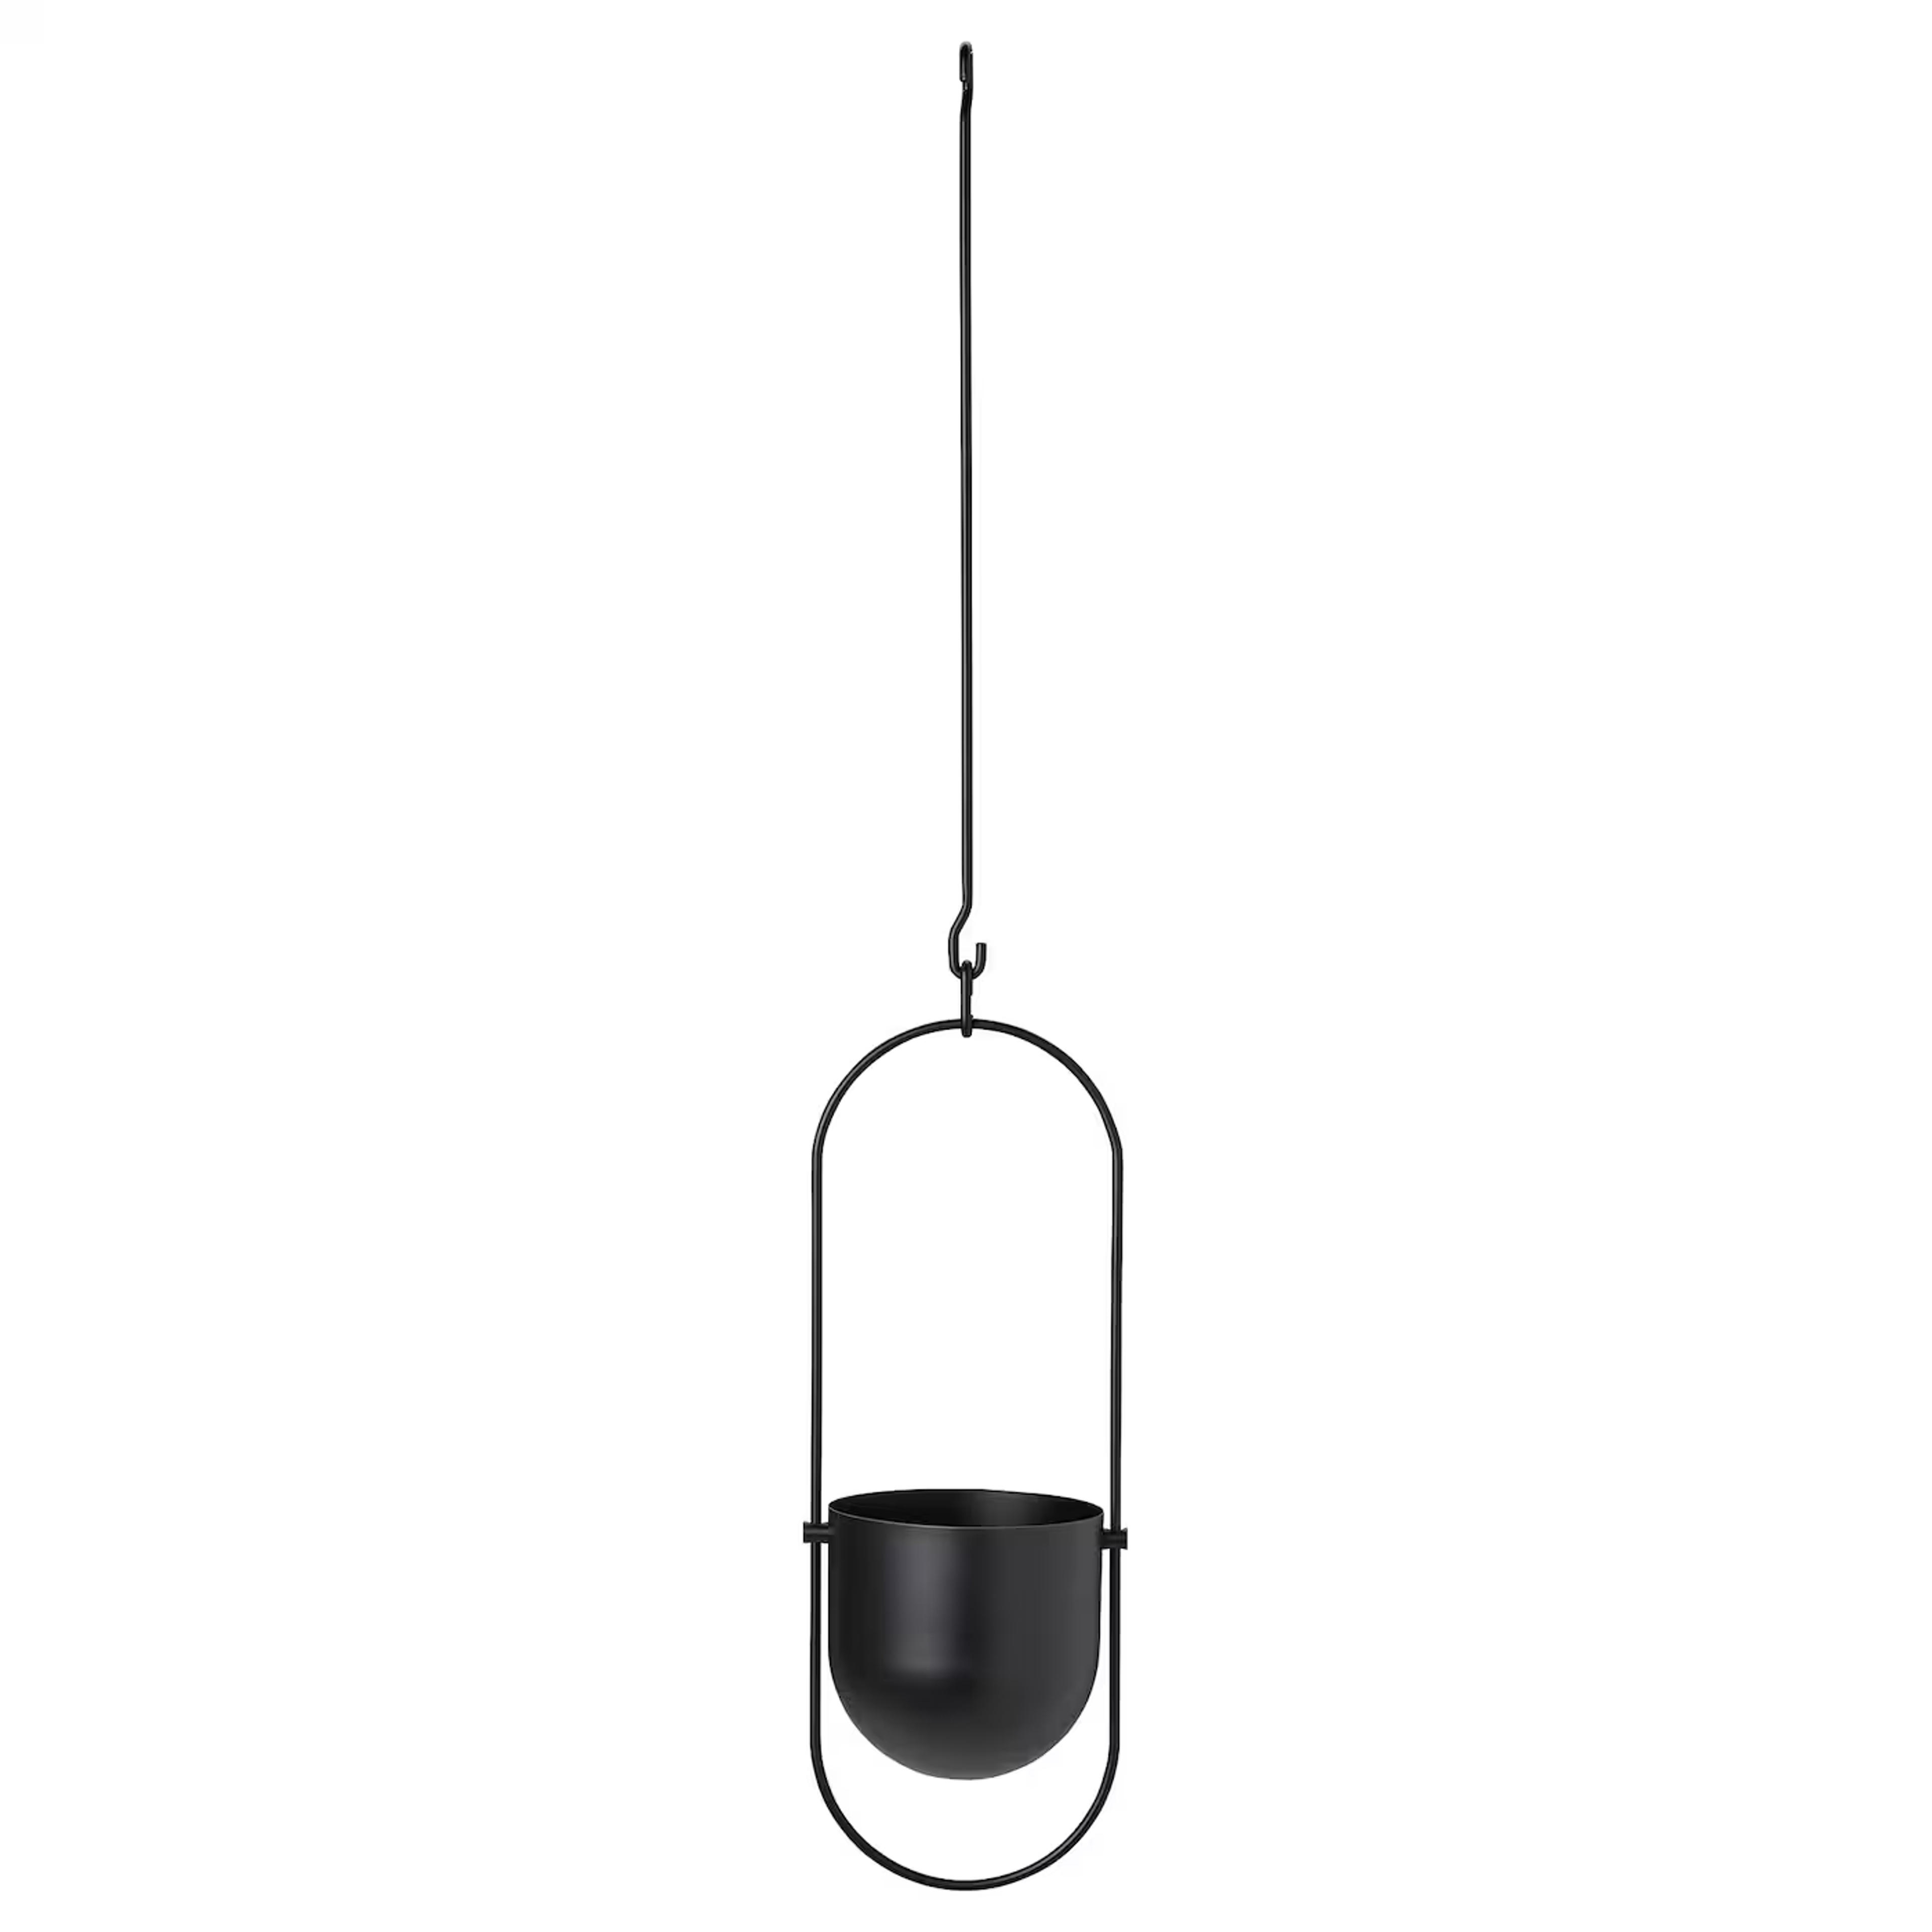 CHILISTRÅN Hanging planter, indoor/outdoor black, 4 ¾" - IKEA